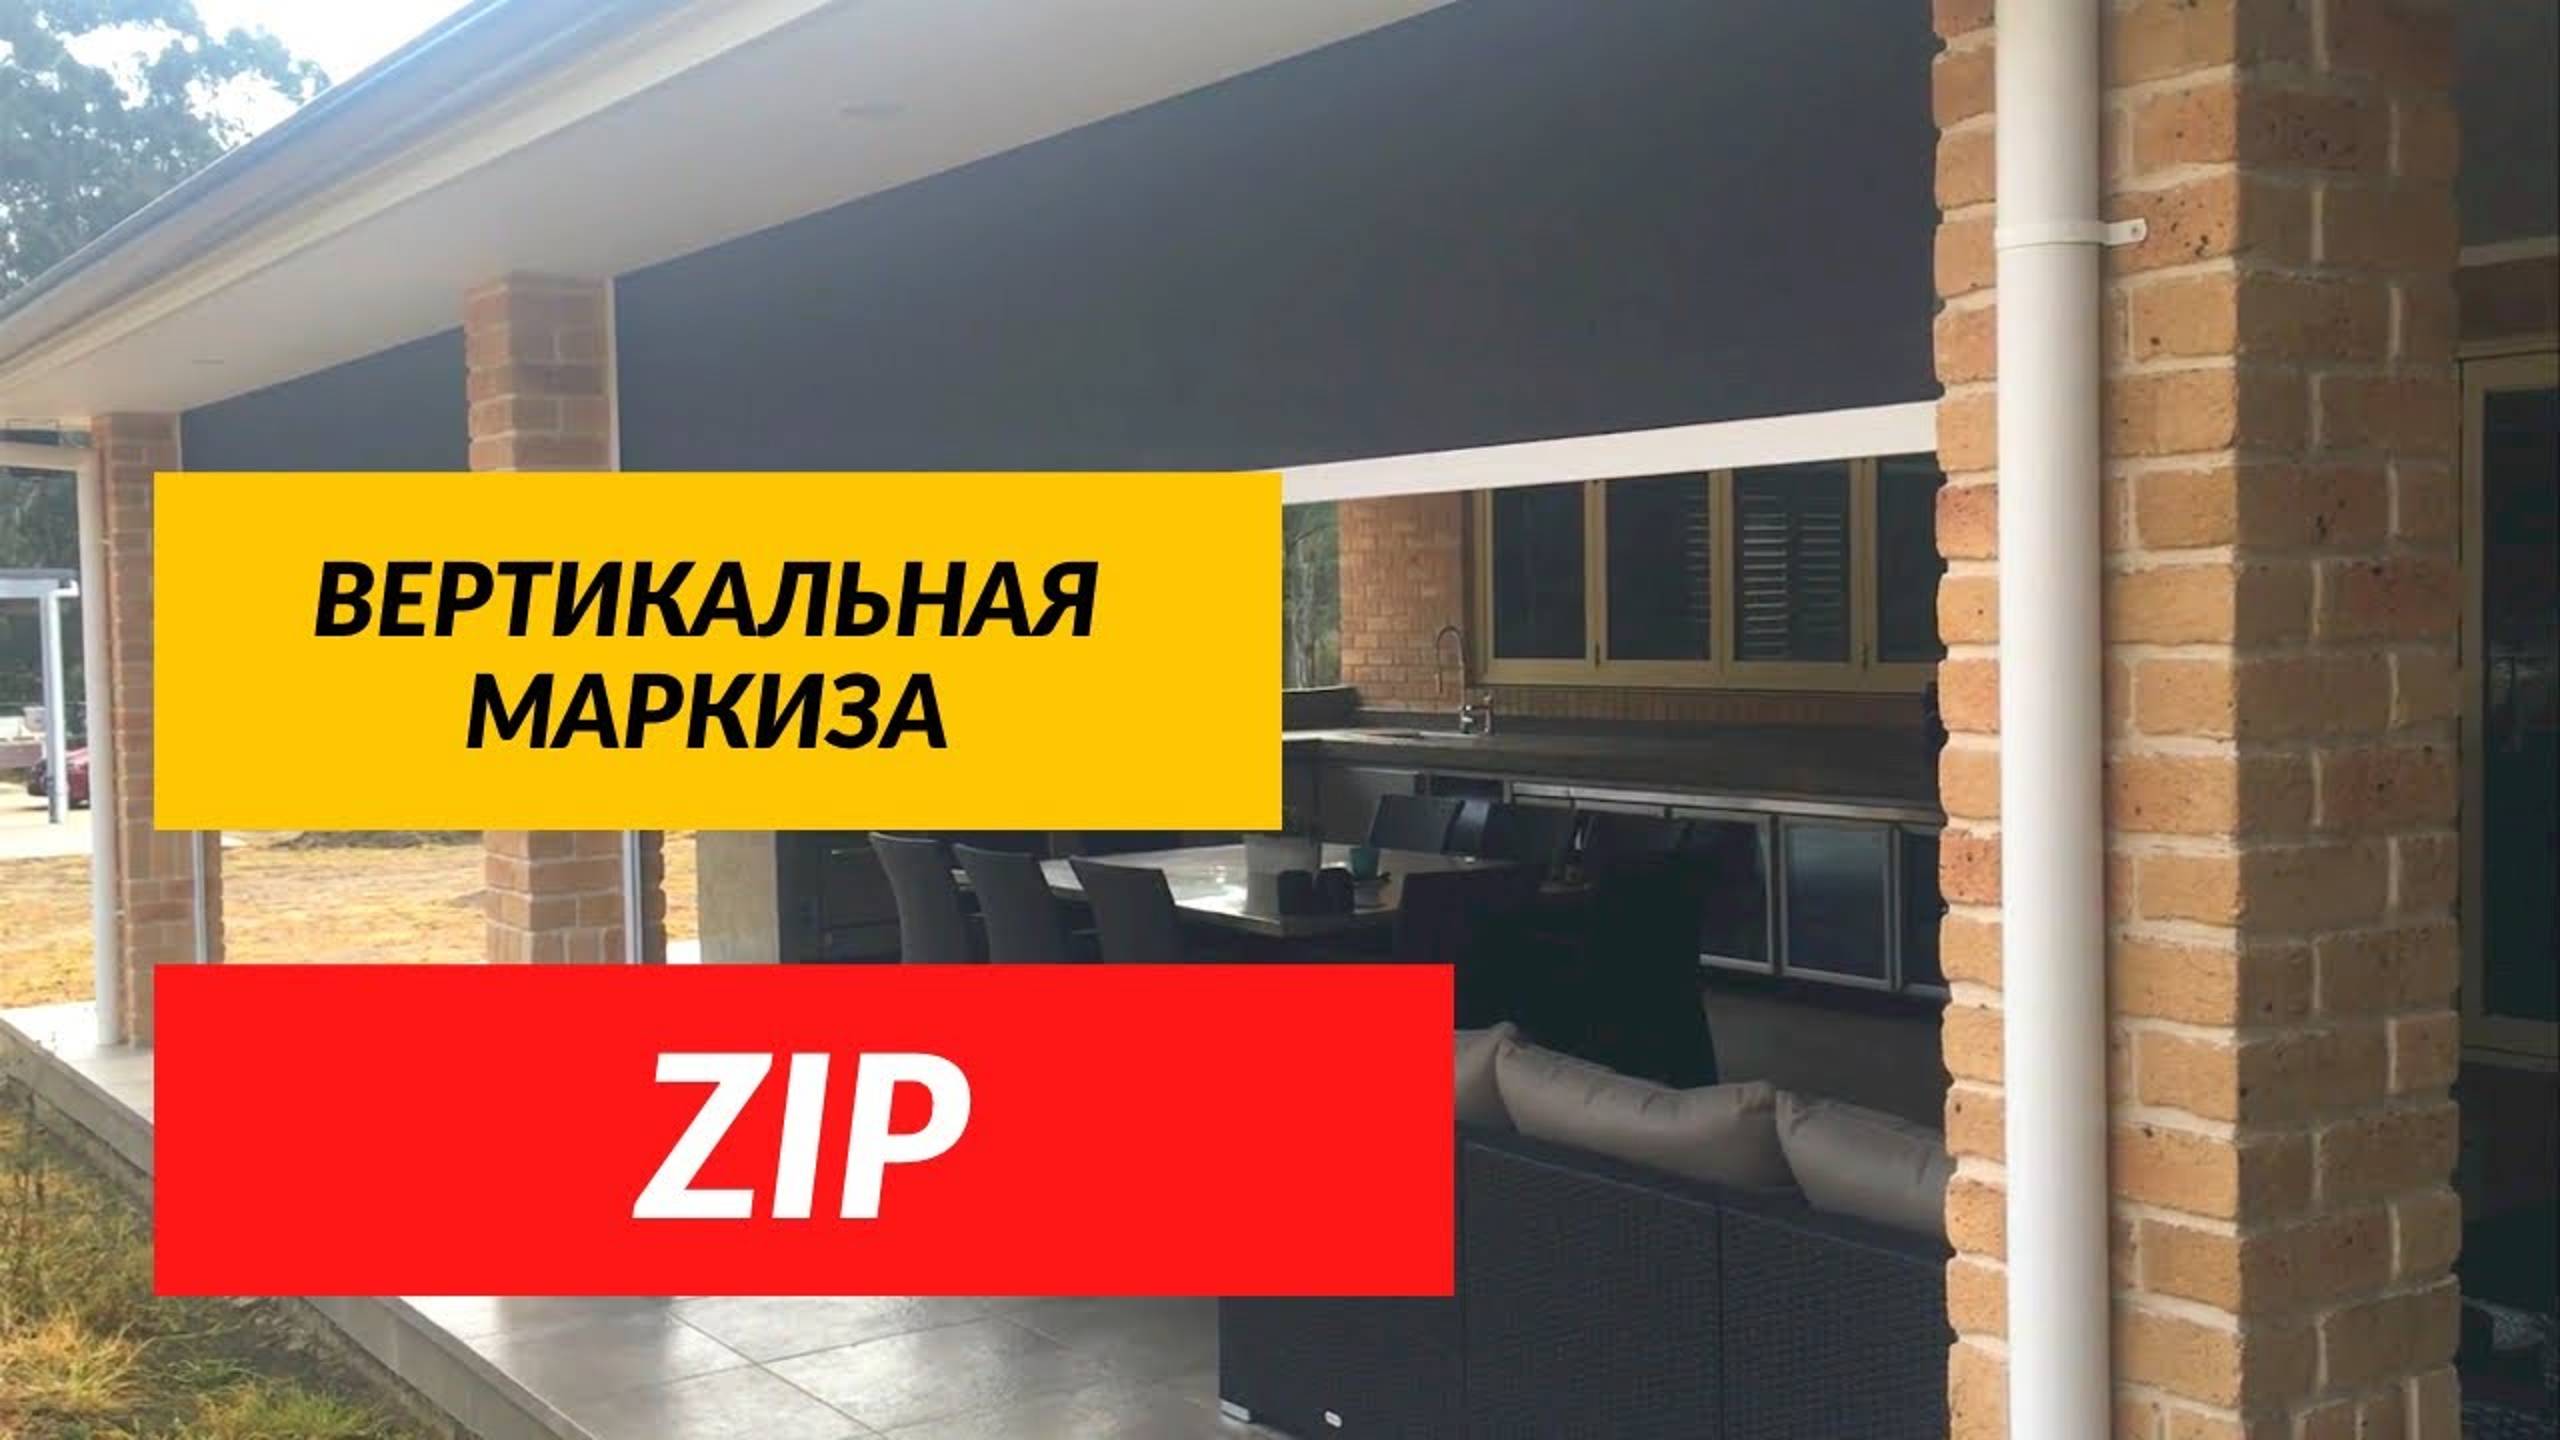 Вертикальная Маркиза Zip экран